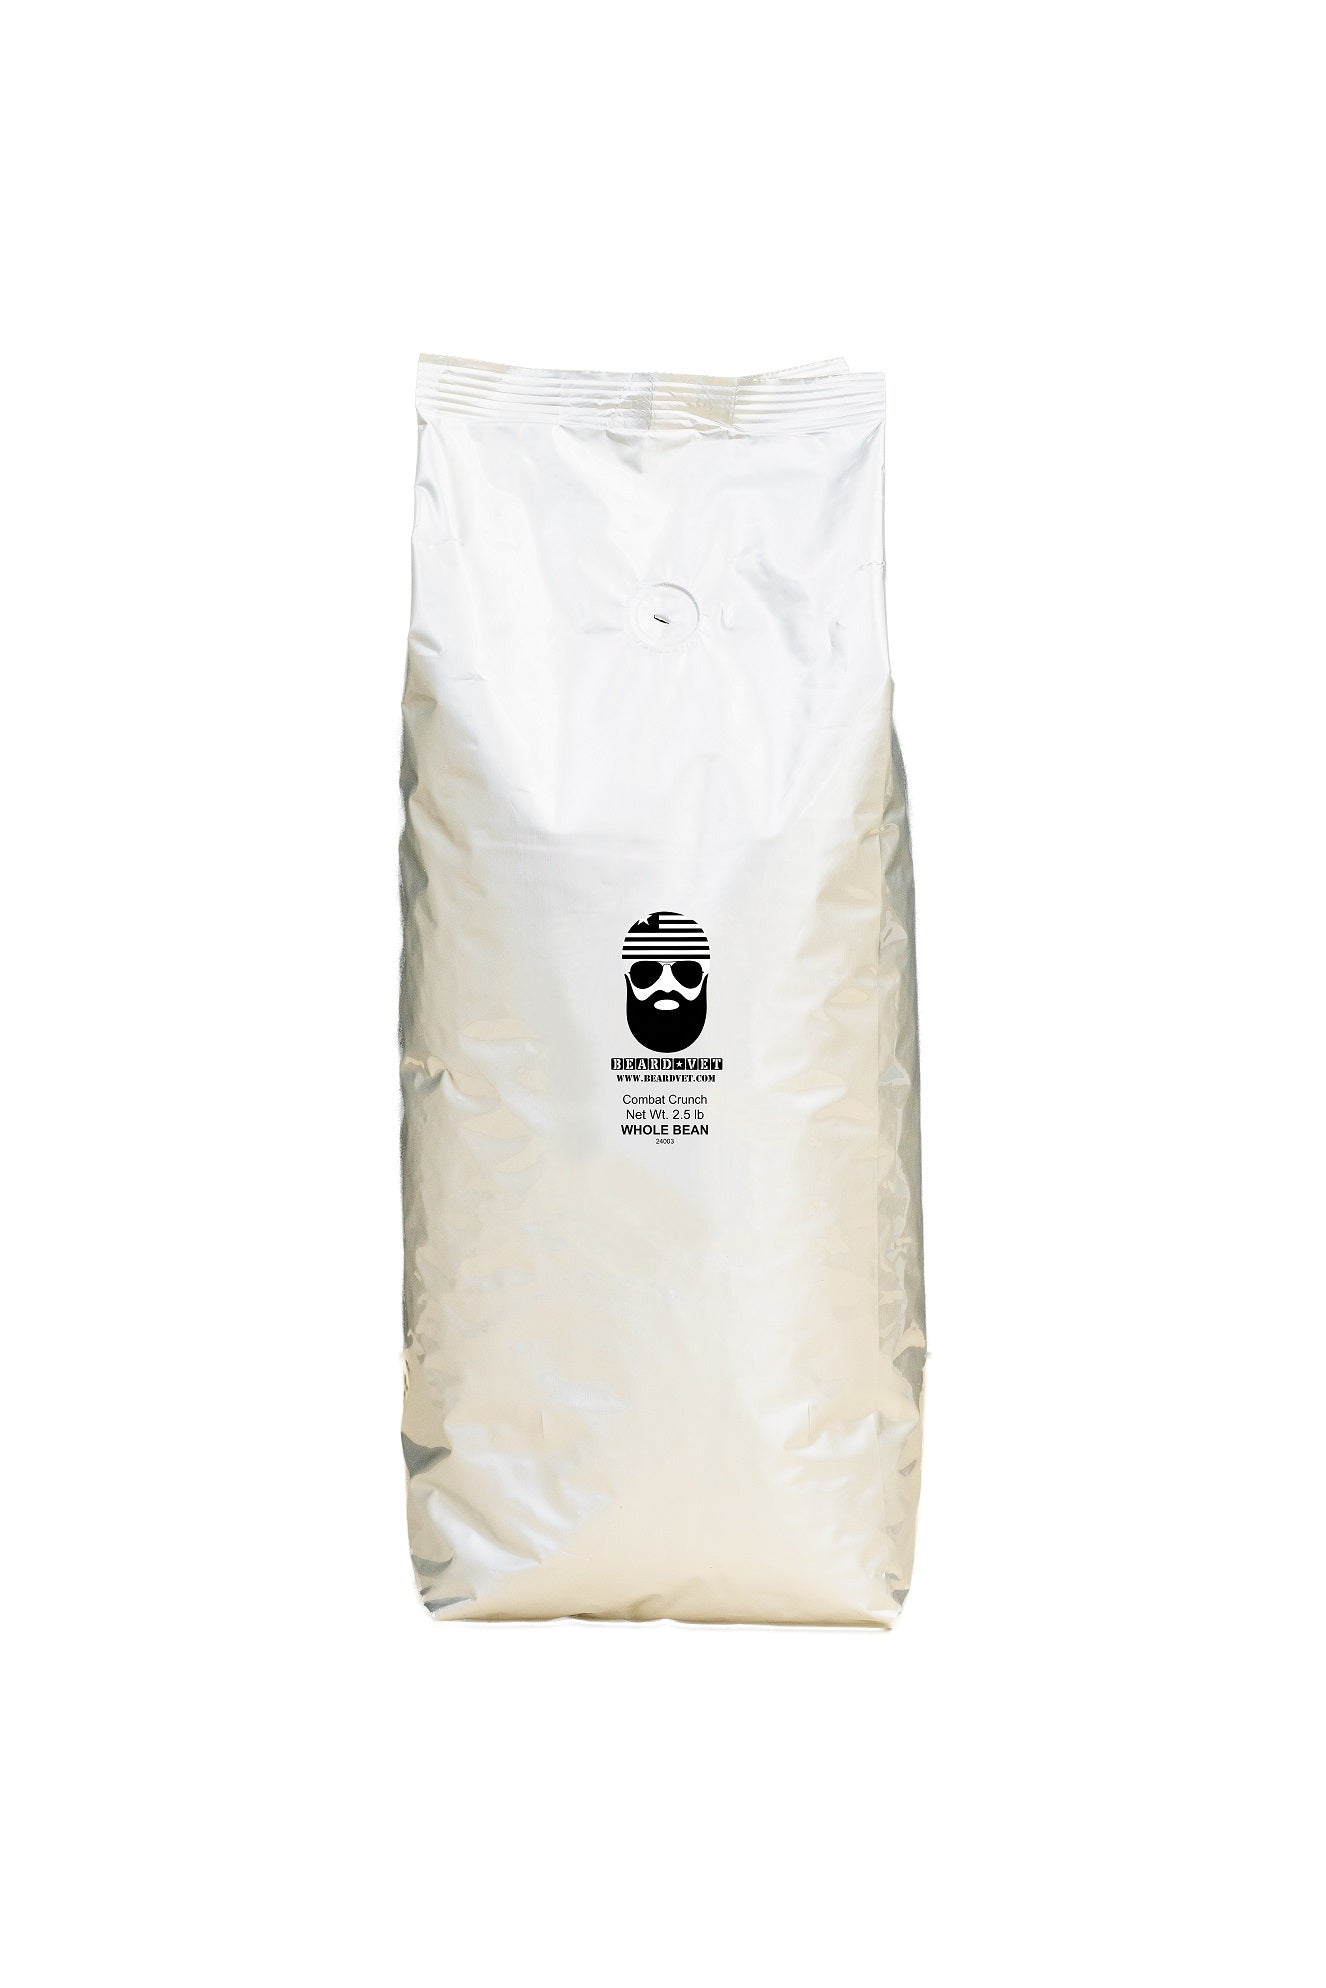 2.5 lb bag: Combat Crunch - WHOLE BEAN